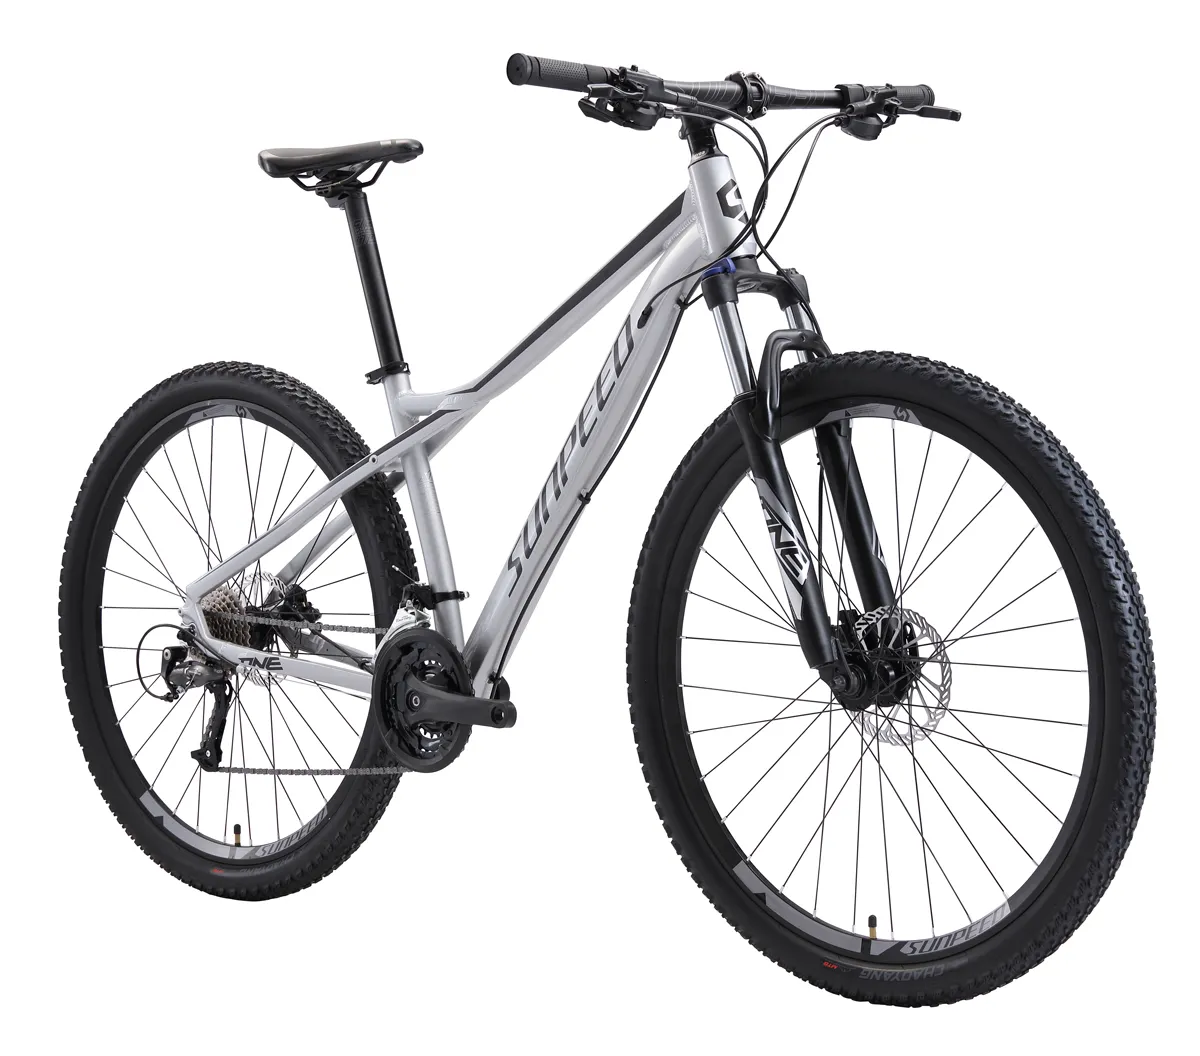 Sunpeed en iyi dağ bir spor bisikleti 24 hız 27.5/29 inç düşük fiyat yüksek kaliteli yokuş aşağı MTB bisiklet dağ bisiklet